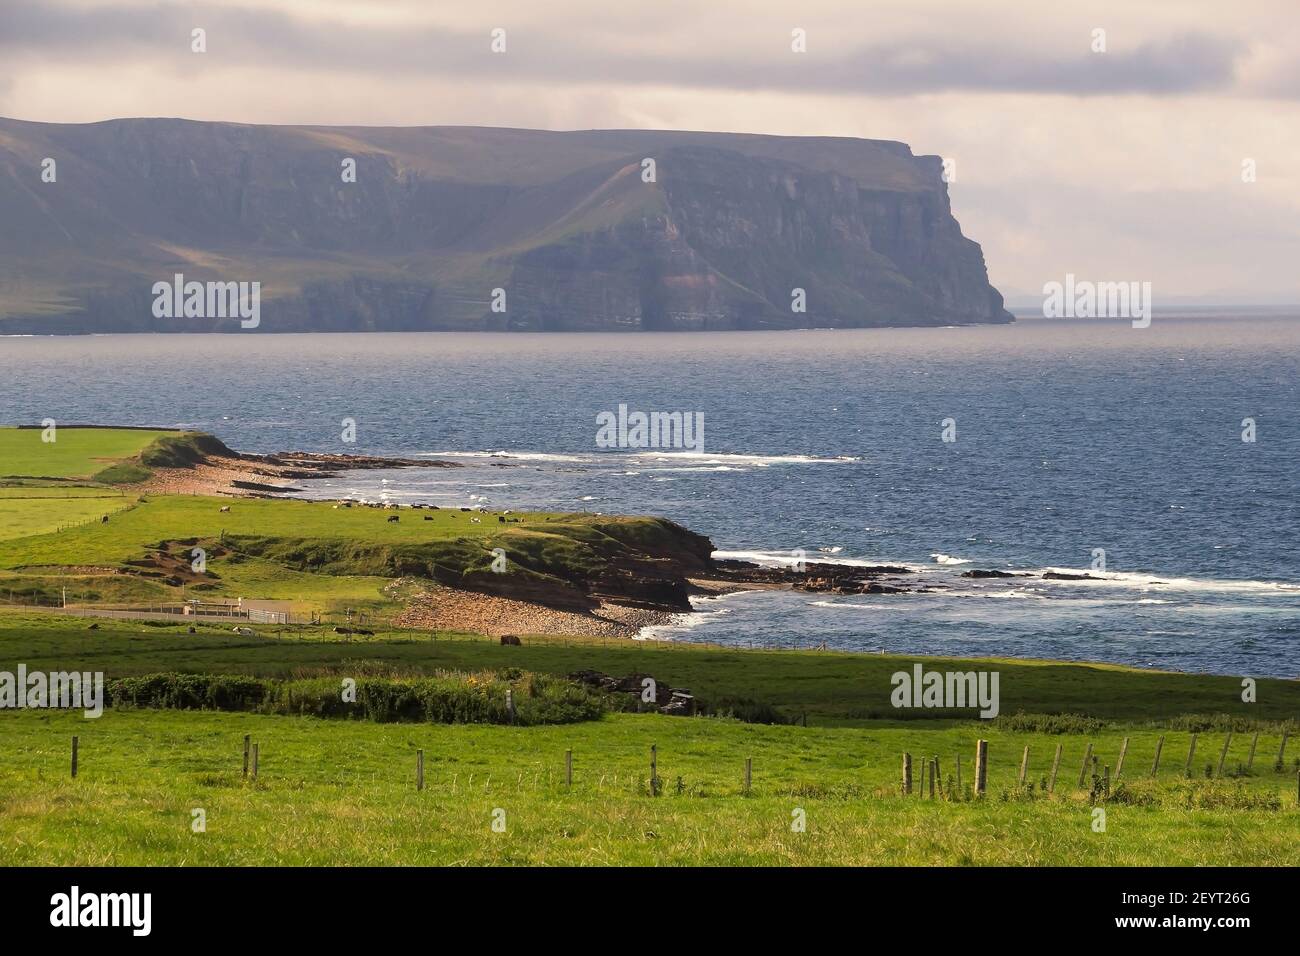 Terres agricoles en herbe verte sur le rivage des îles écossaises avec des falaises et Eaux de l'océan Atlantique en arrière-plan Banque D'Images